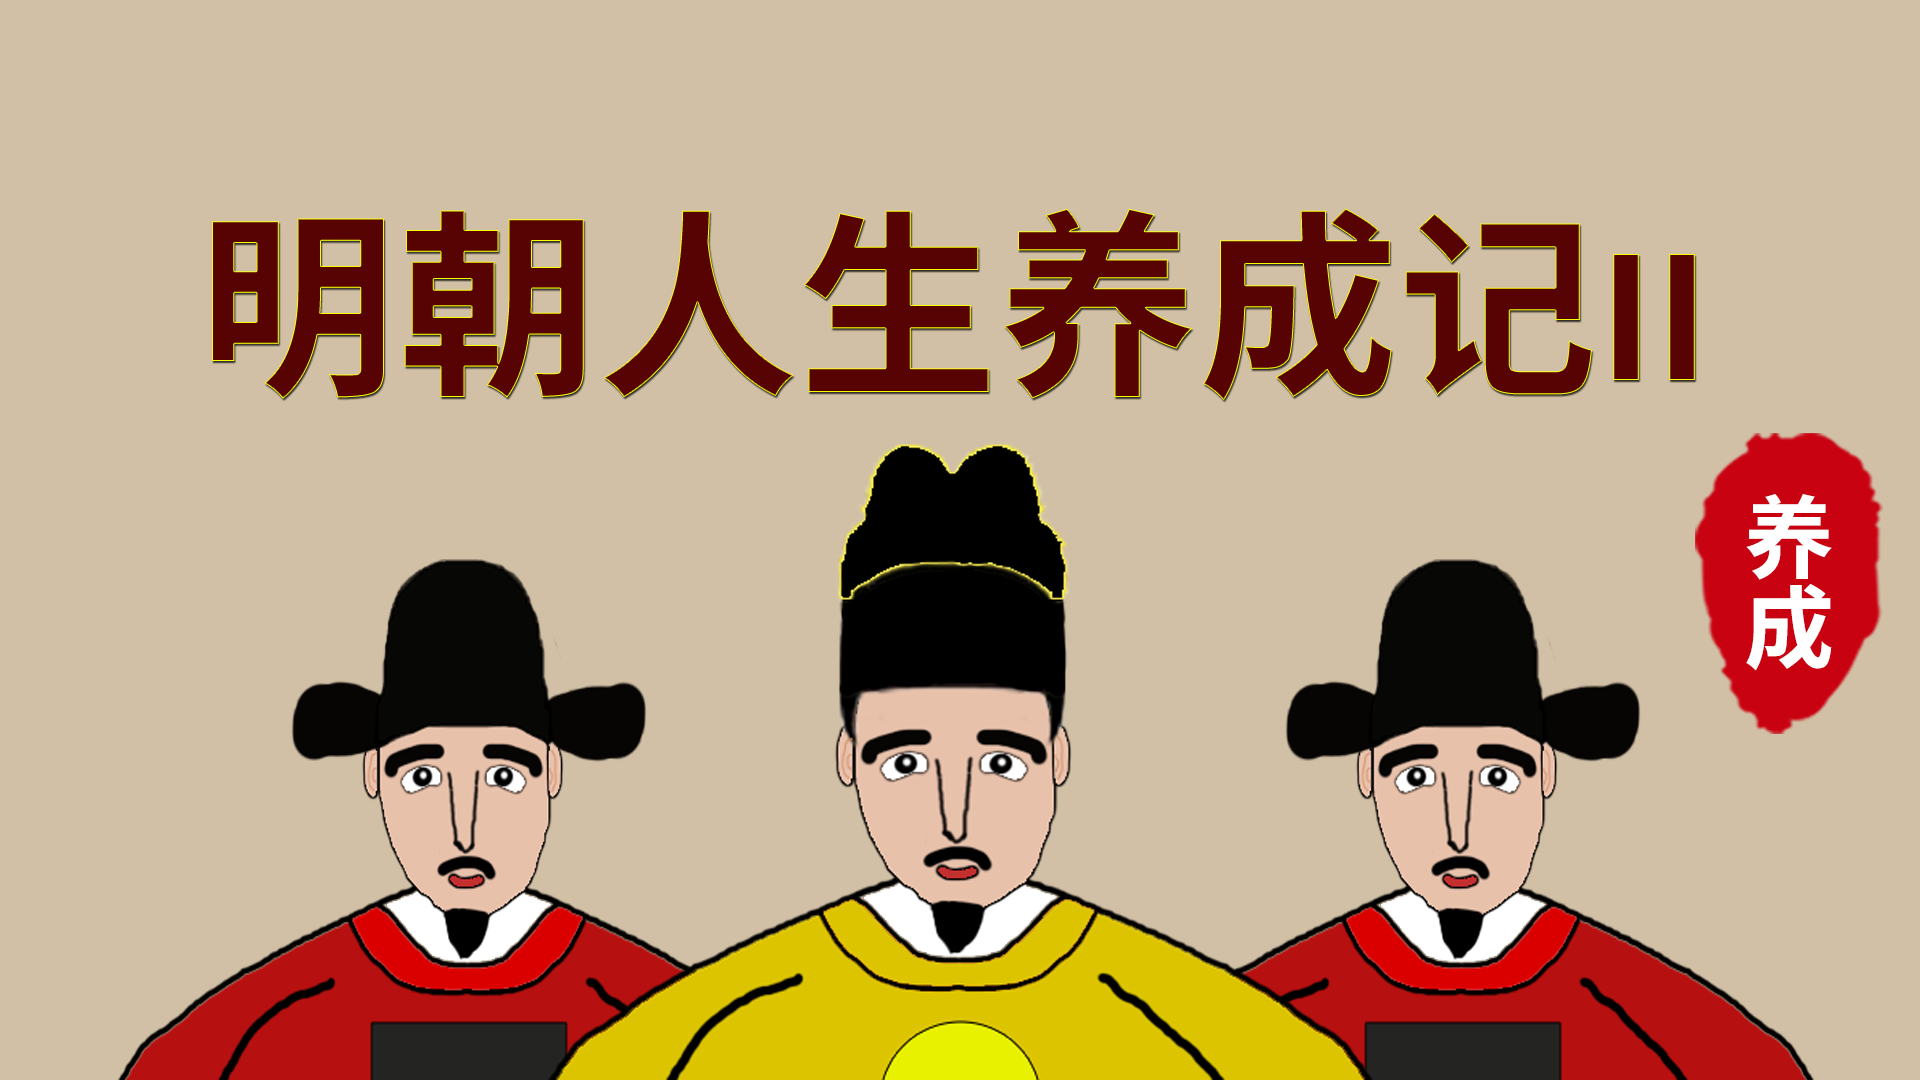 Banner of Histoire de développement de la vie de la dynastie Ming 2 